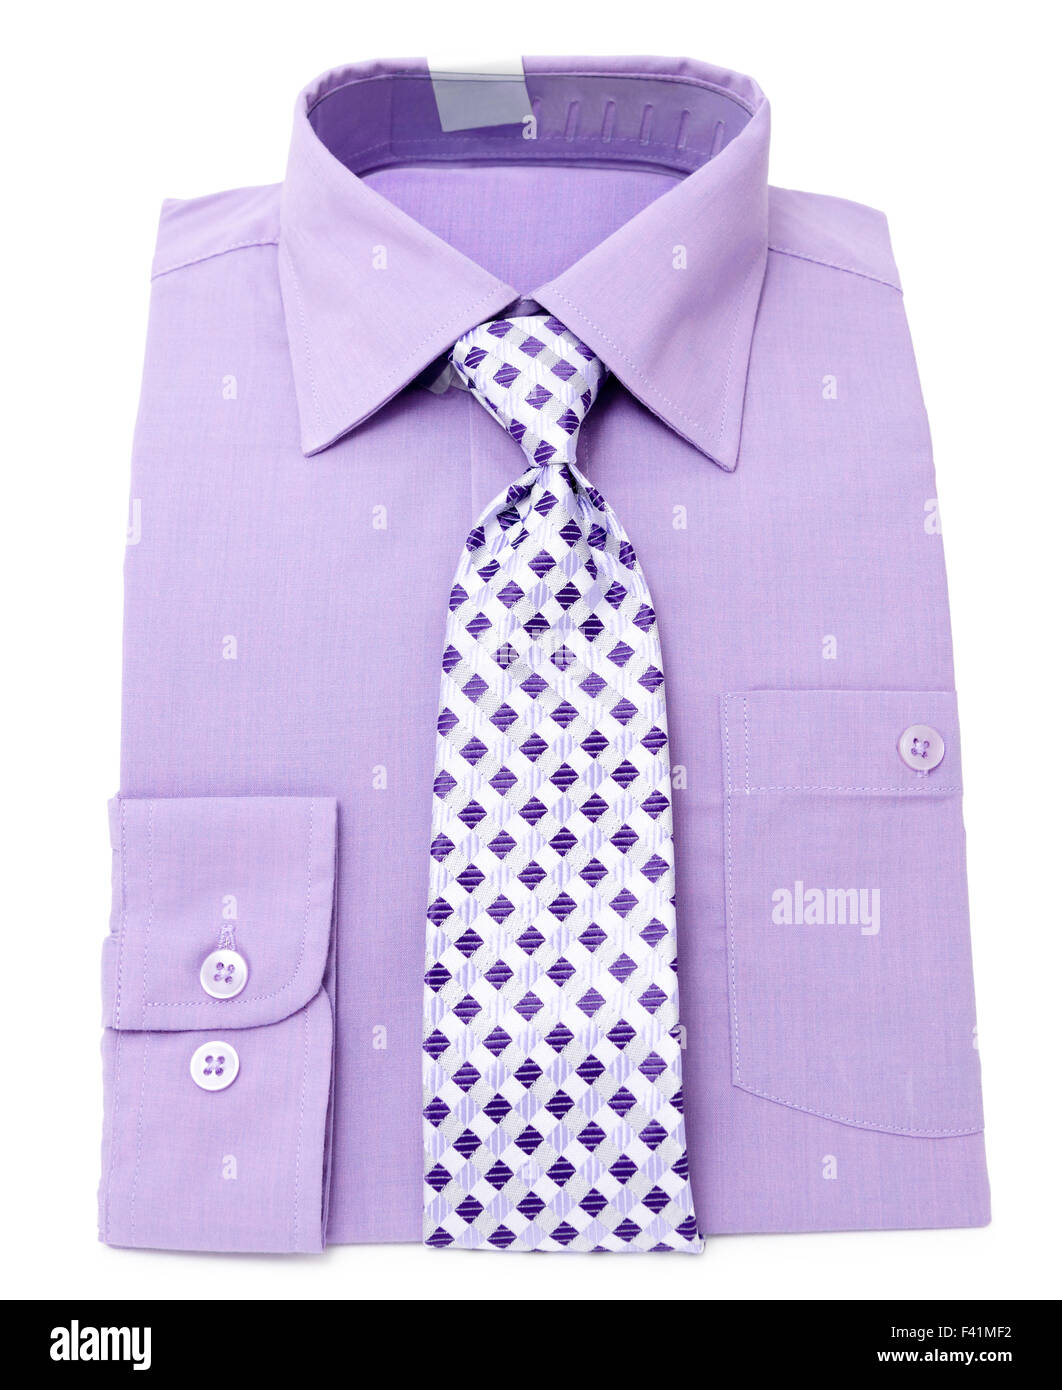 Camisa violeta e imágenes de alta resolución - Alamy